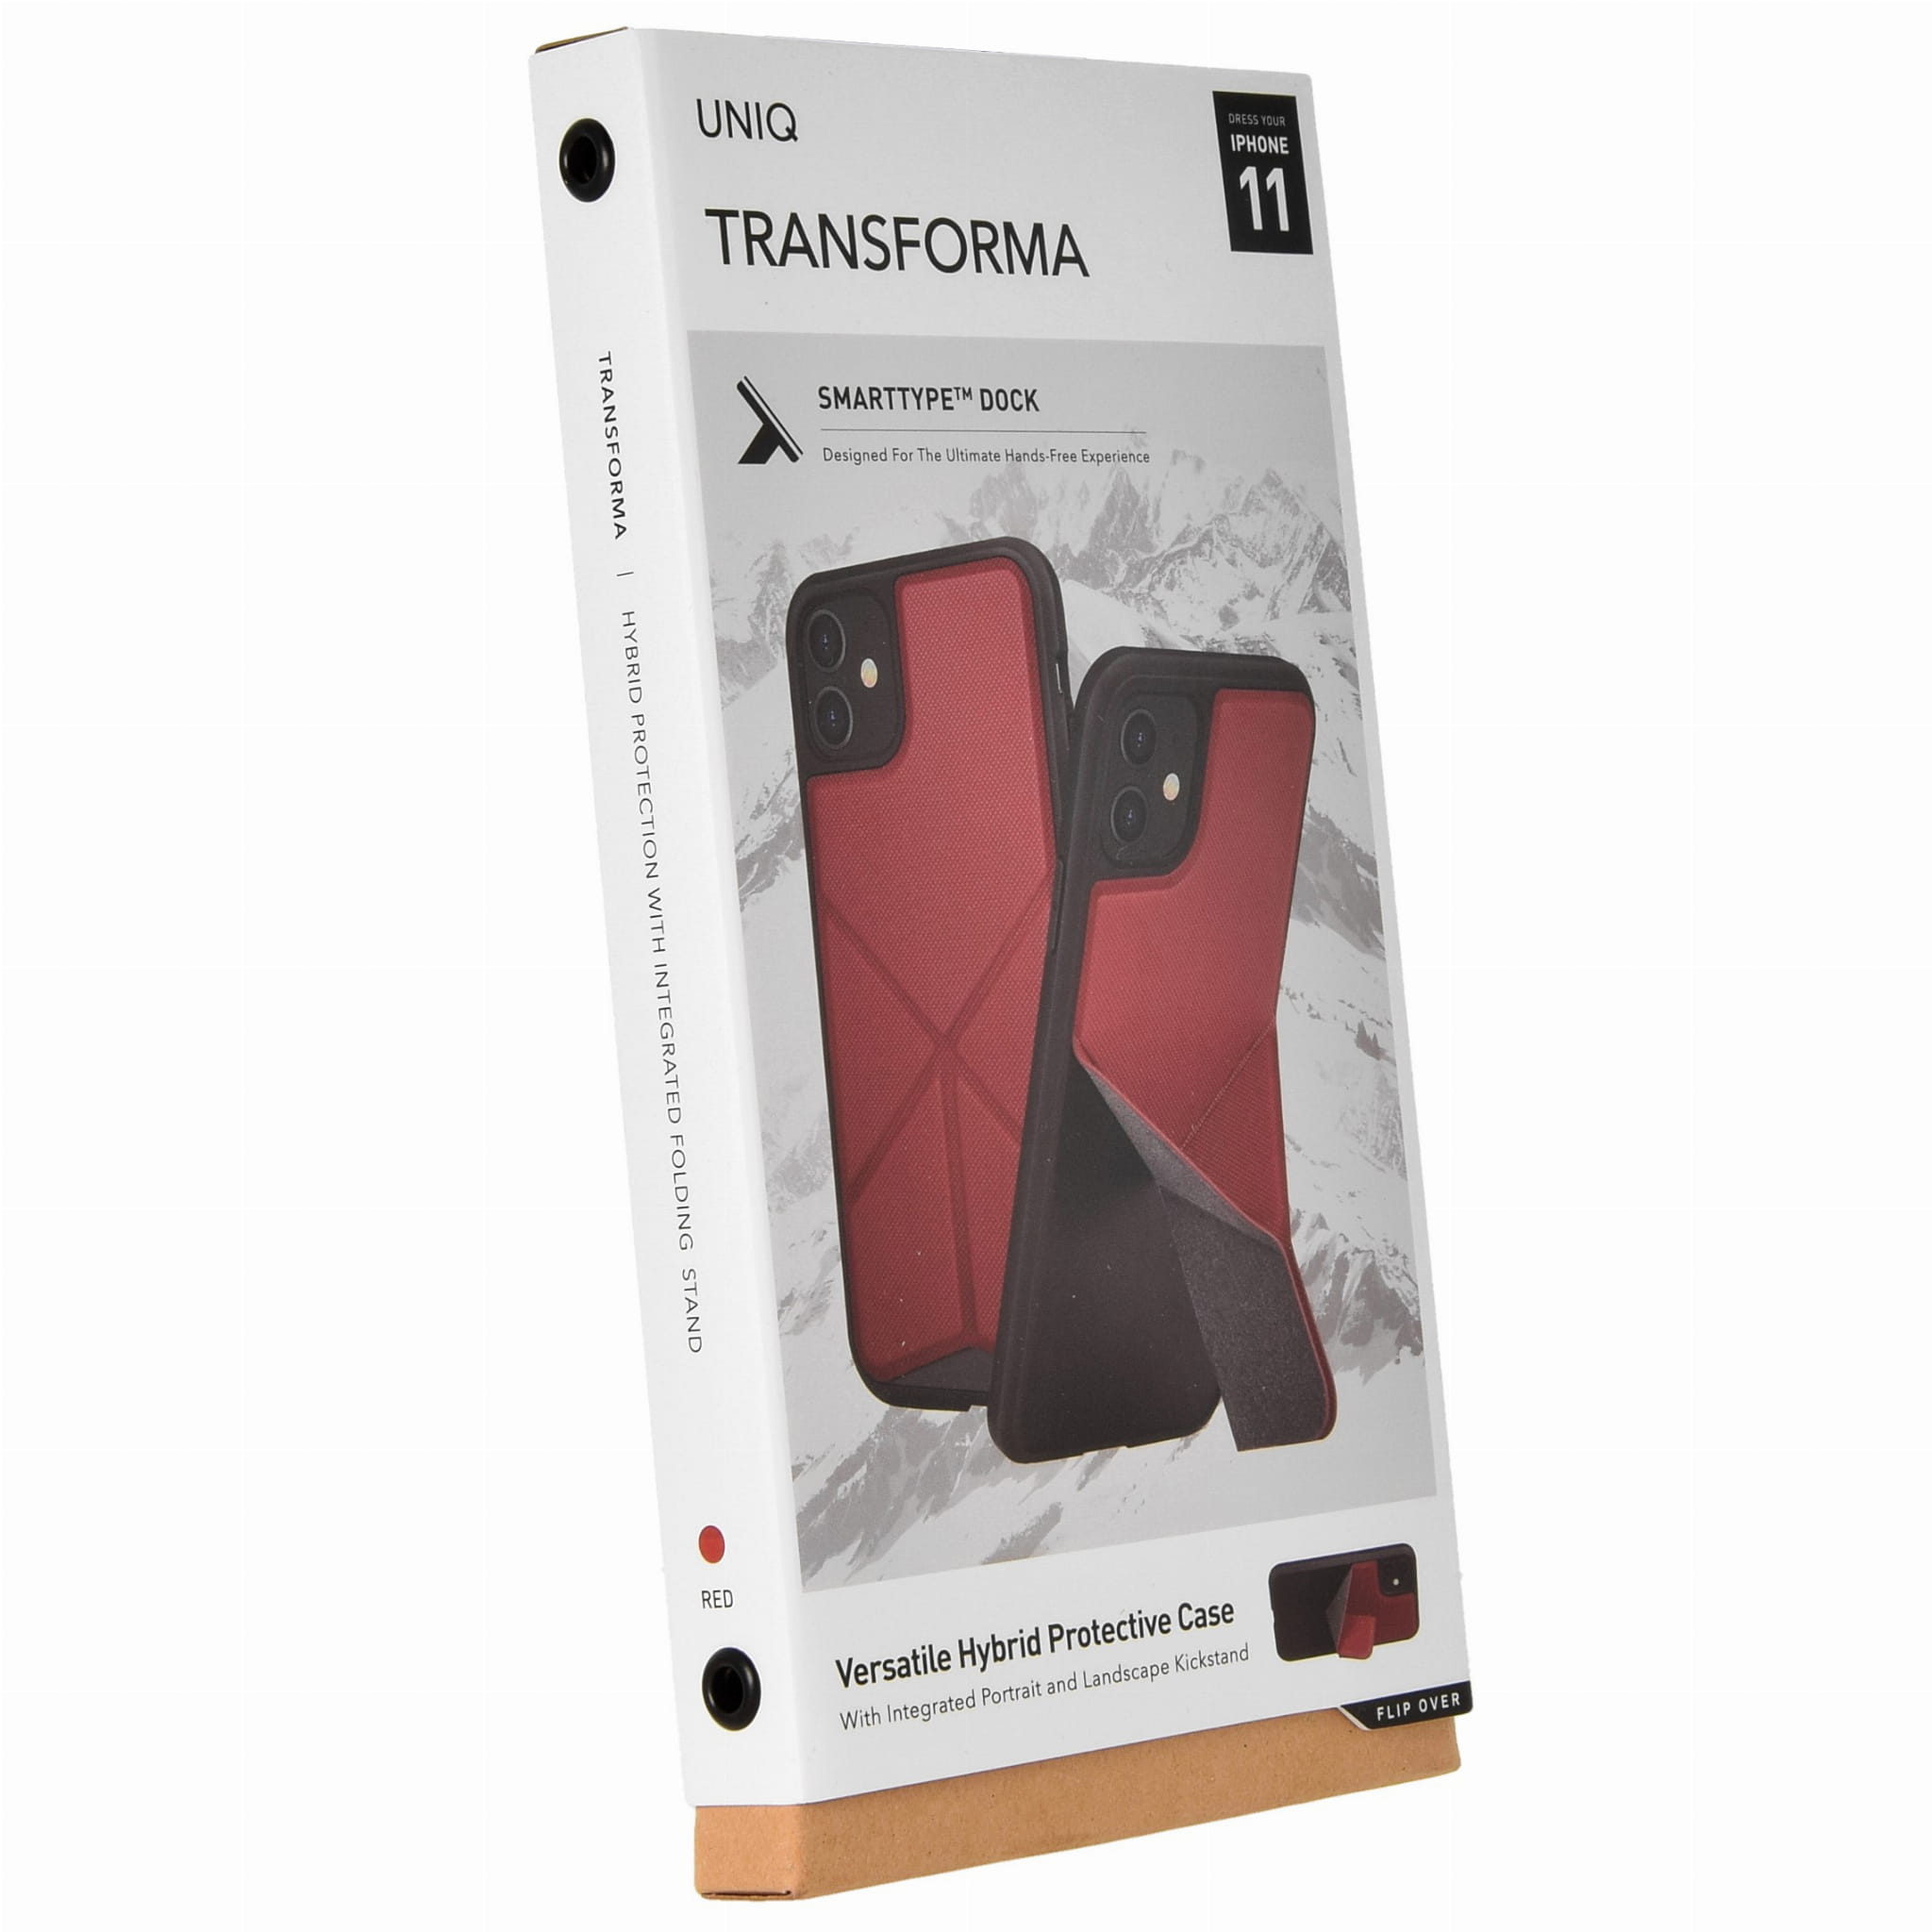 Schutzhülle Uniq aus der Serie Transforma für iPhone 11 rot.